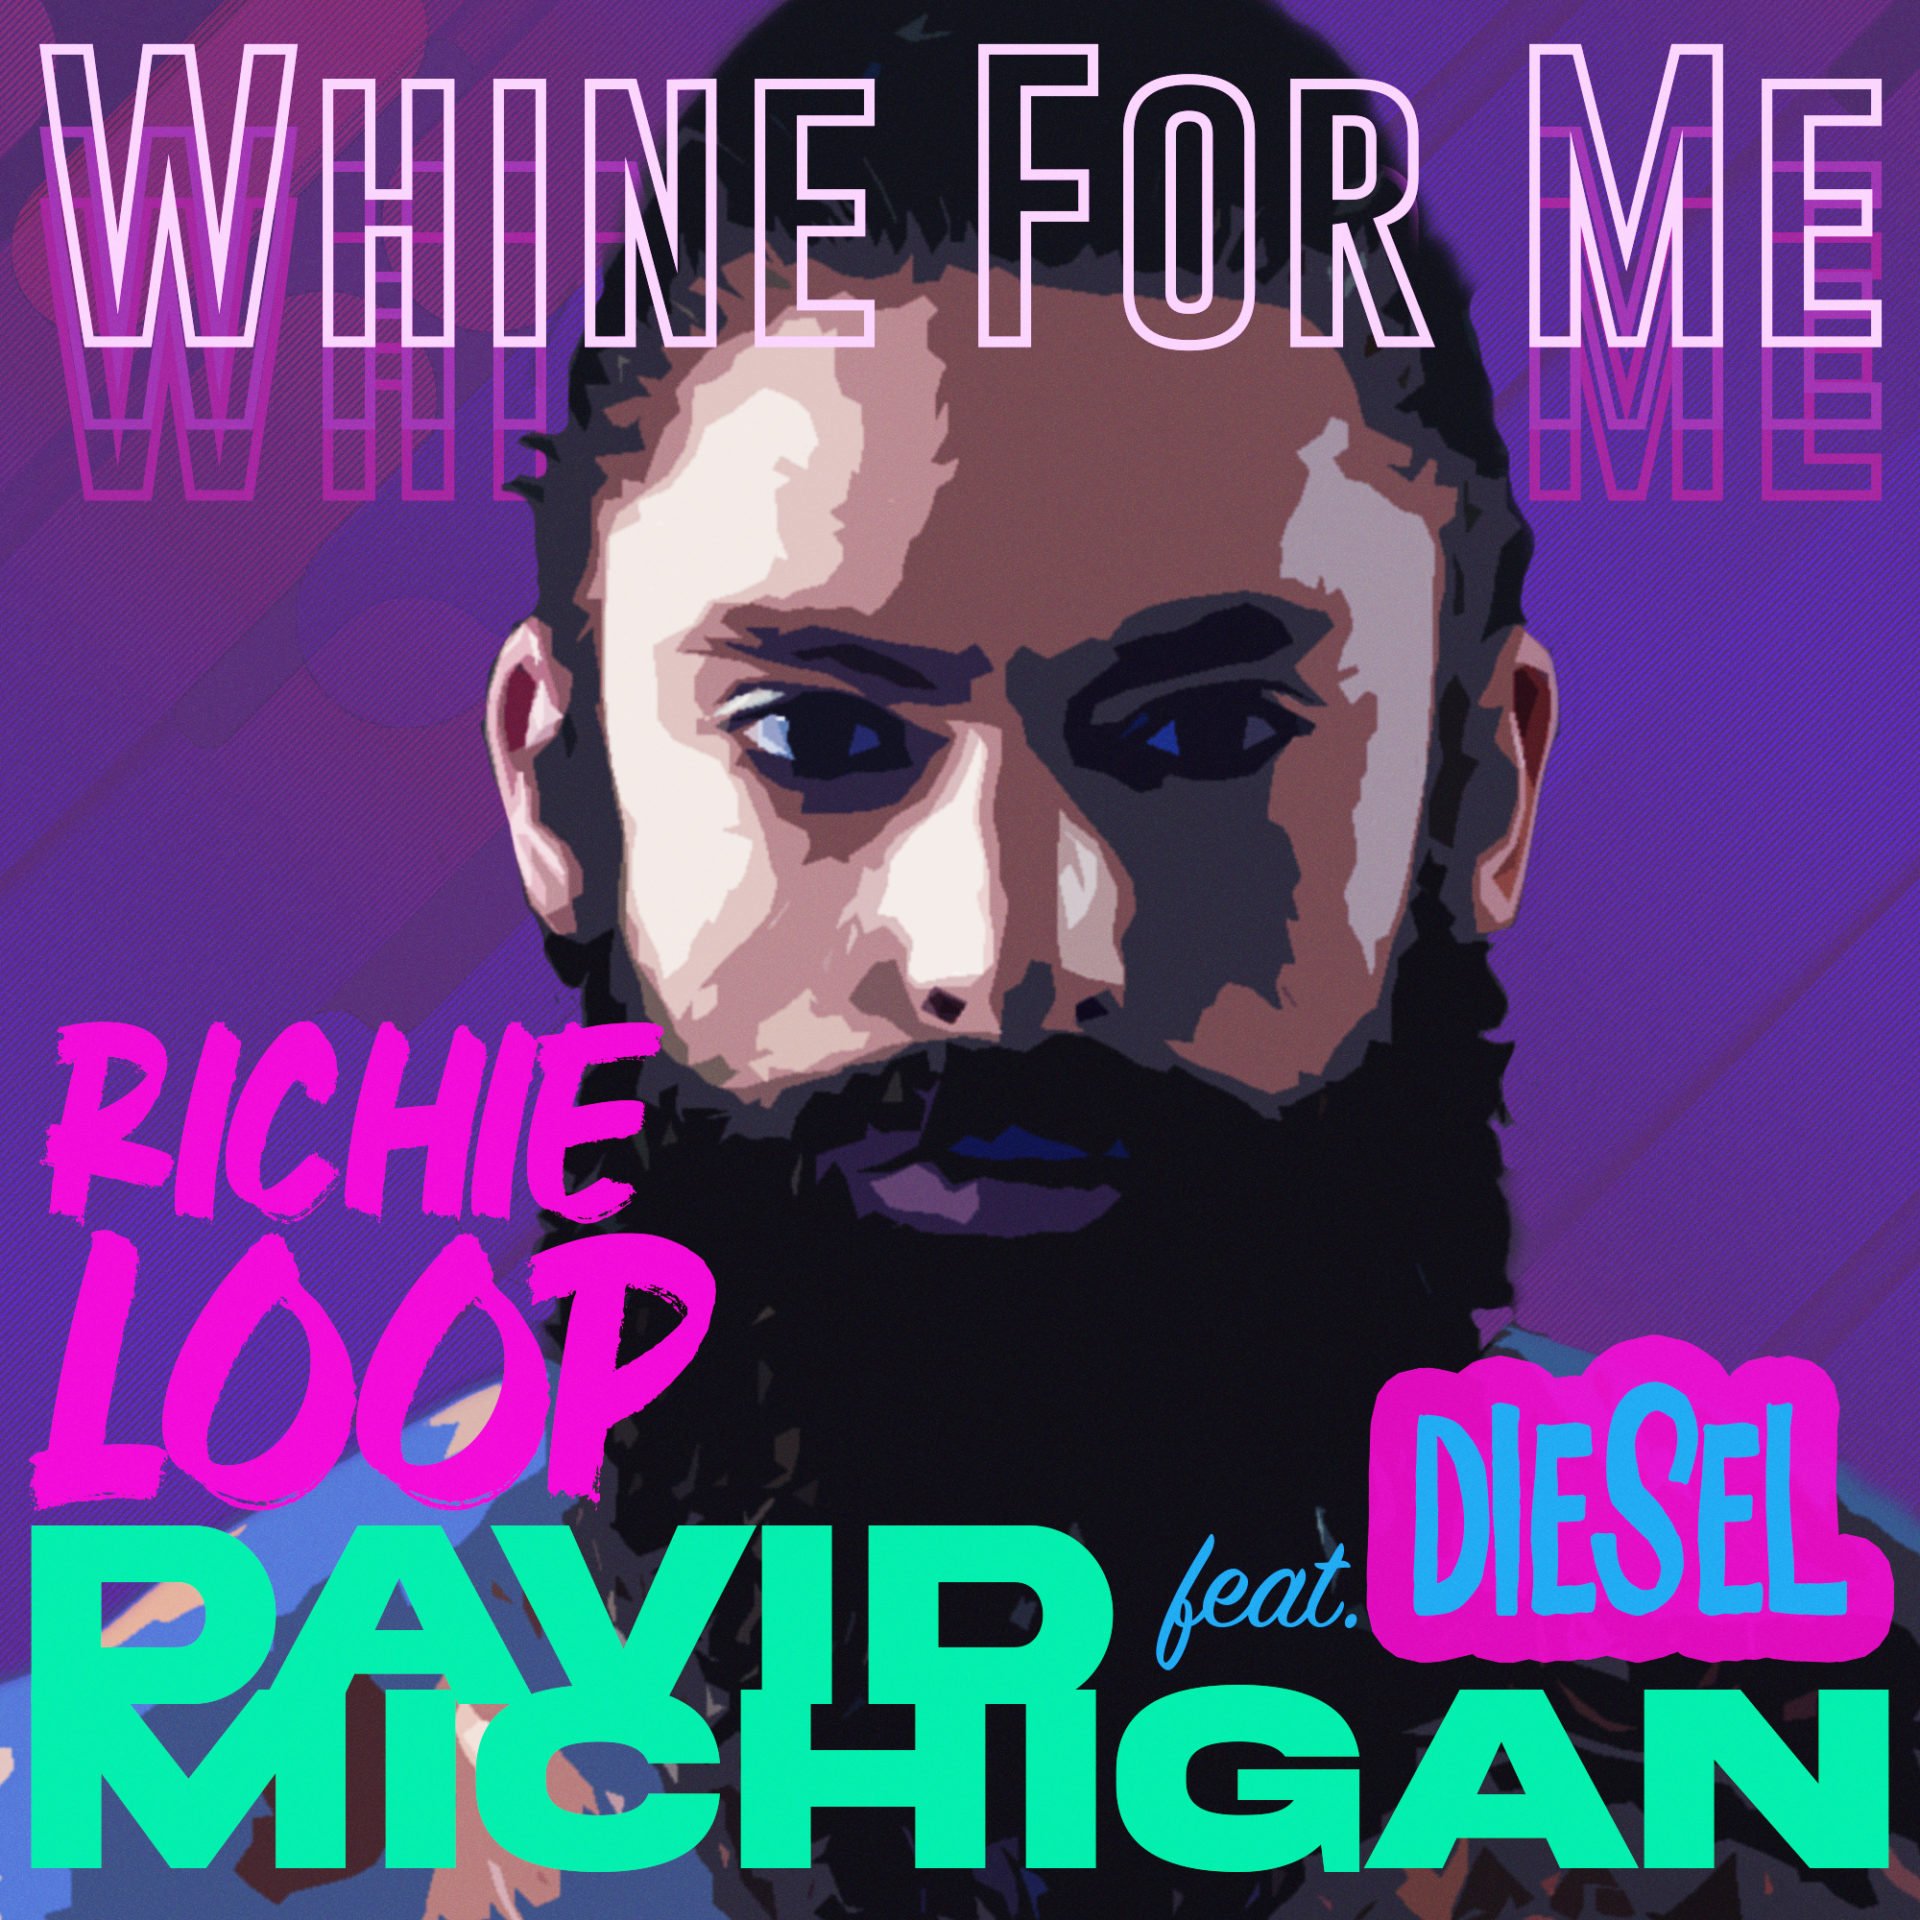 David Michigan dévoile son clip vidéo avec le tube Whine For Me